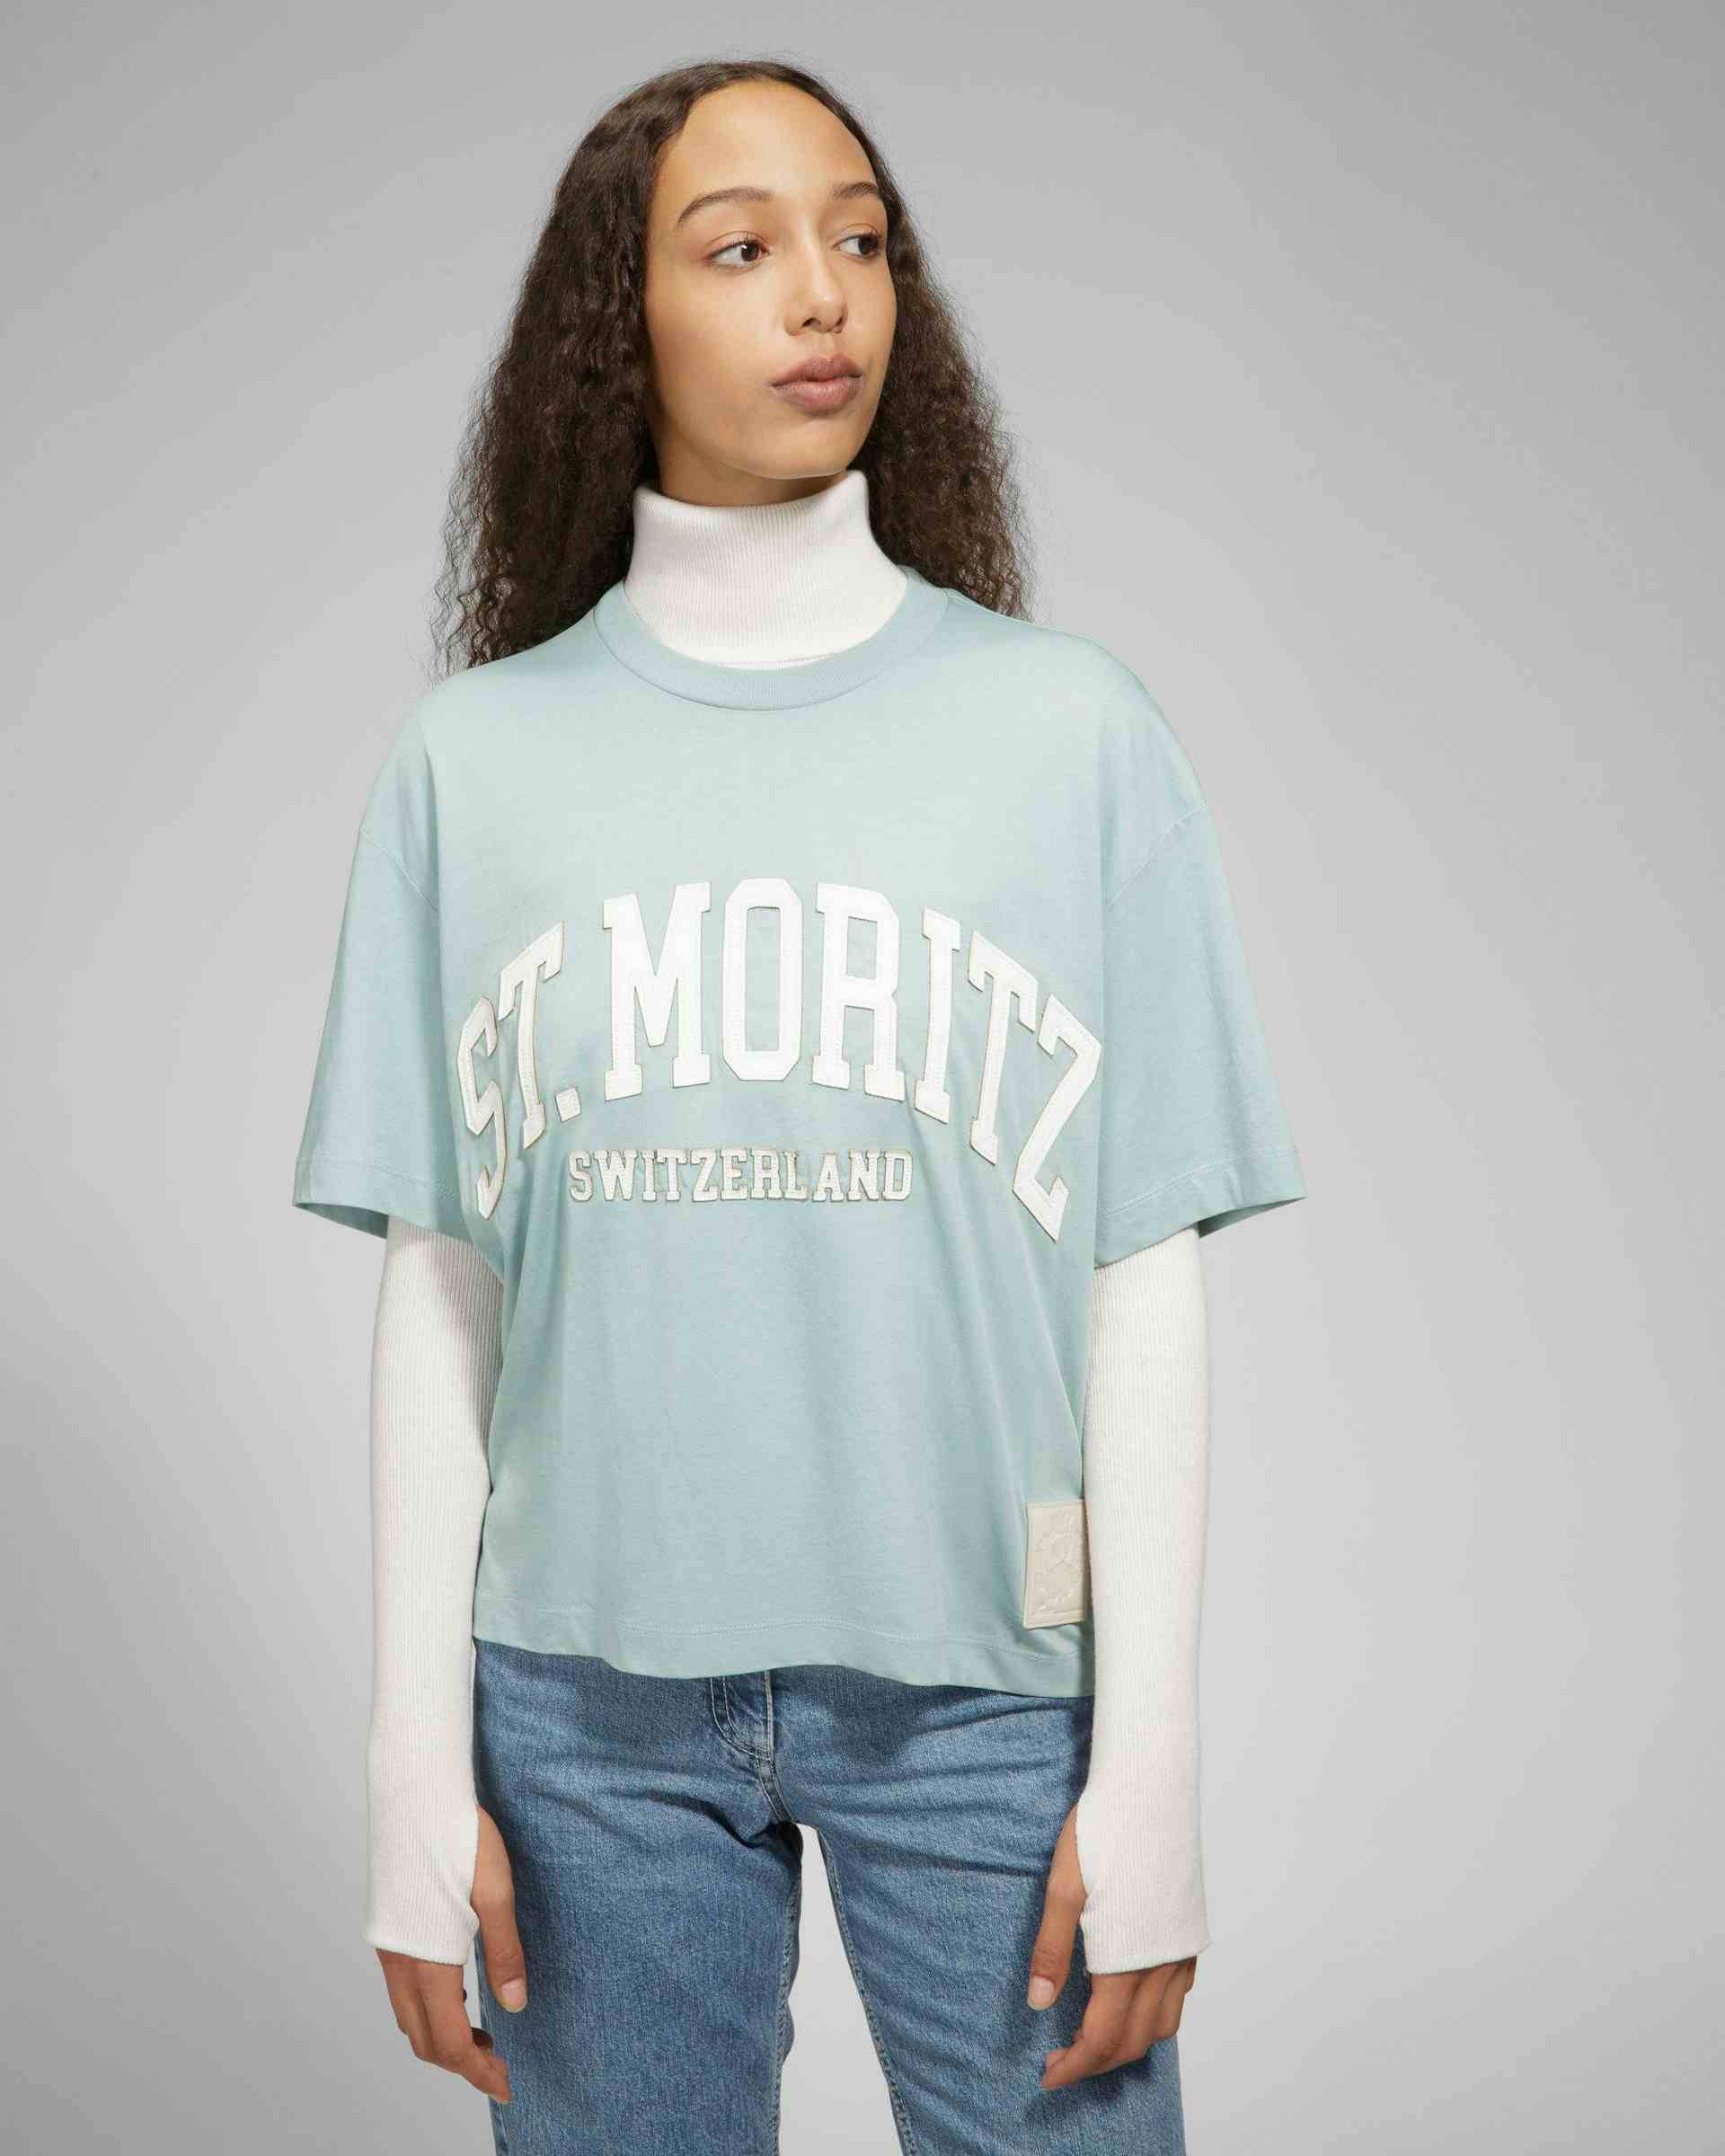 St Moritz T-Shirt - Men's - Bally